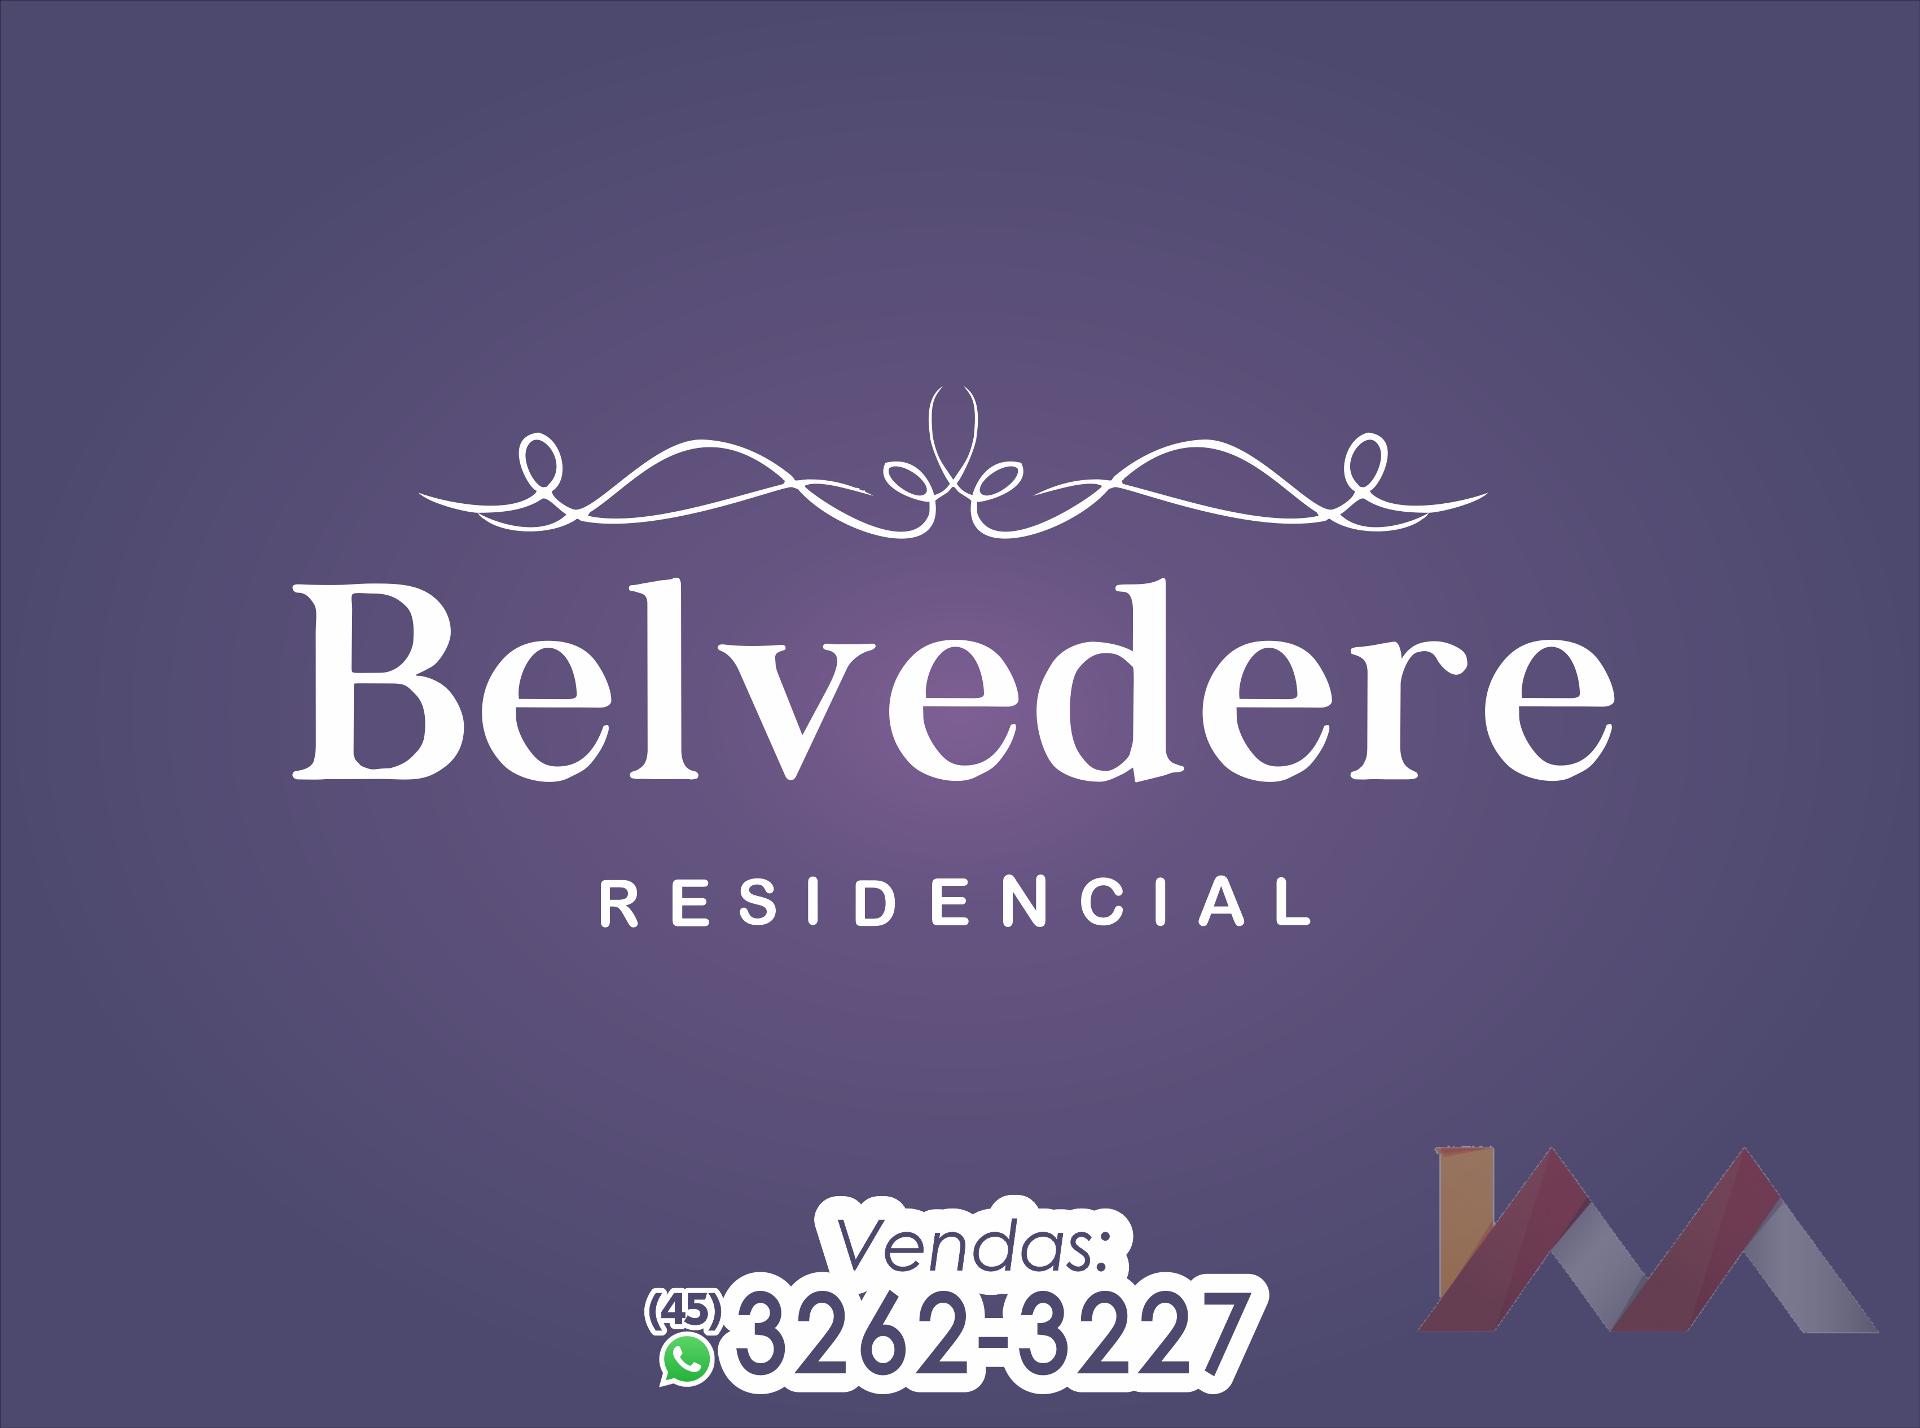 Apartamento 105 do Residencial Belvedere